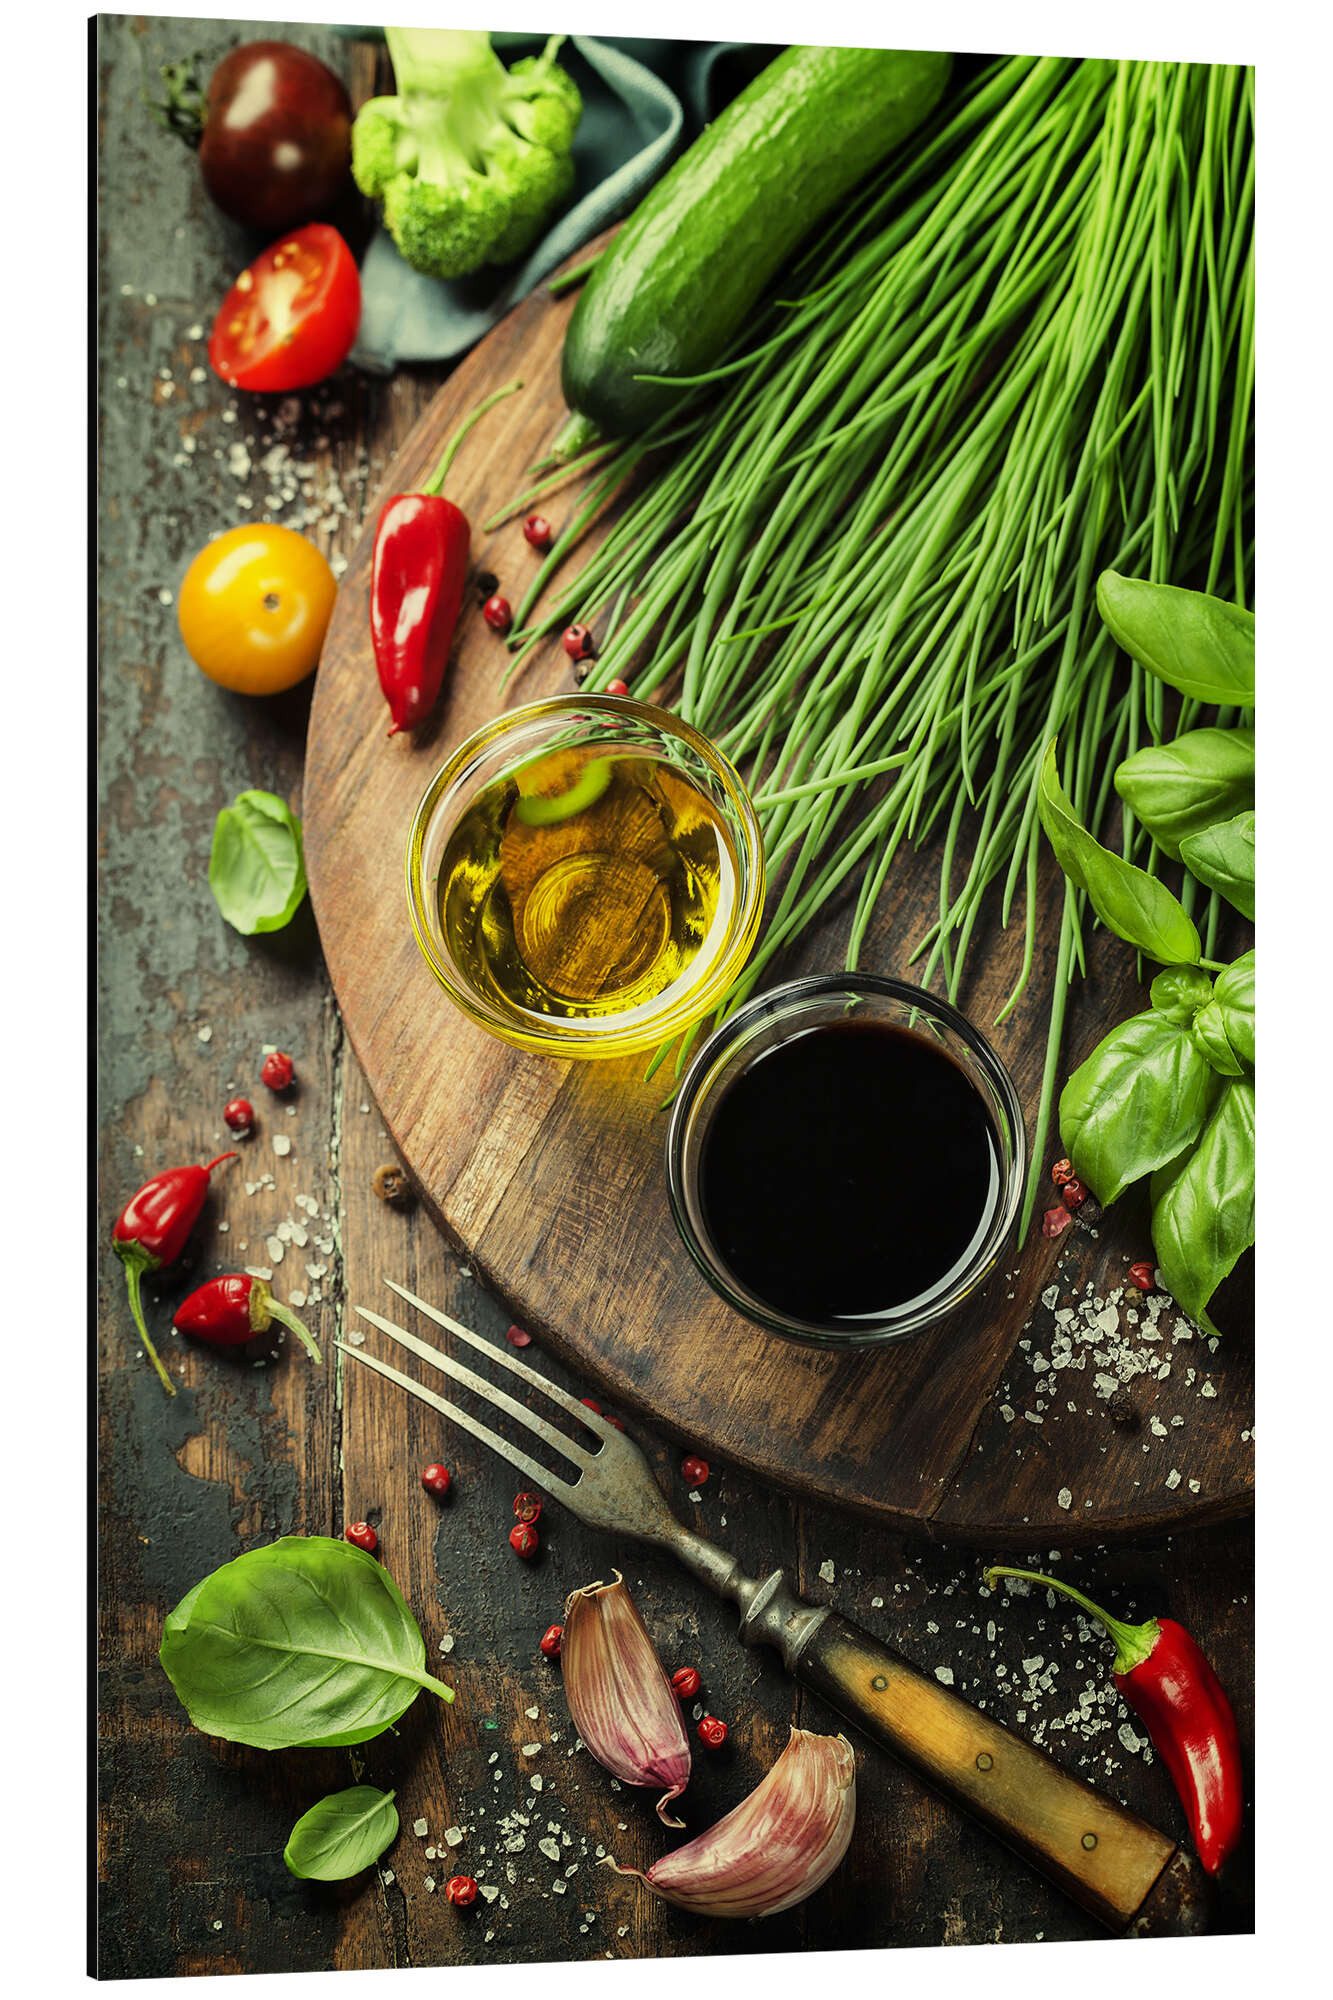 Posterlounge Alu-Dibond-Druck Editors Choice, Gesundes Bio-Gemüse und Gewürze, Küche Fotografie